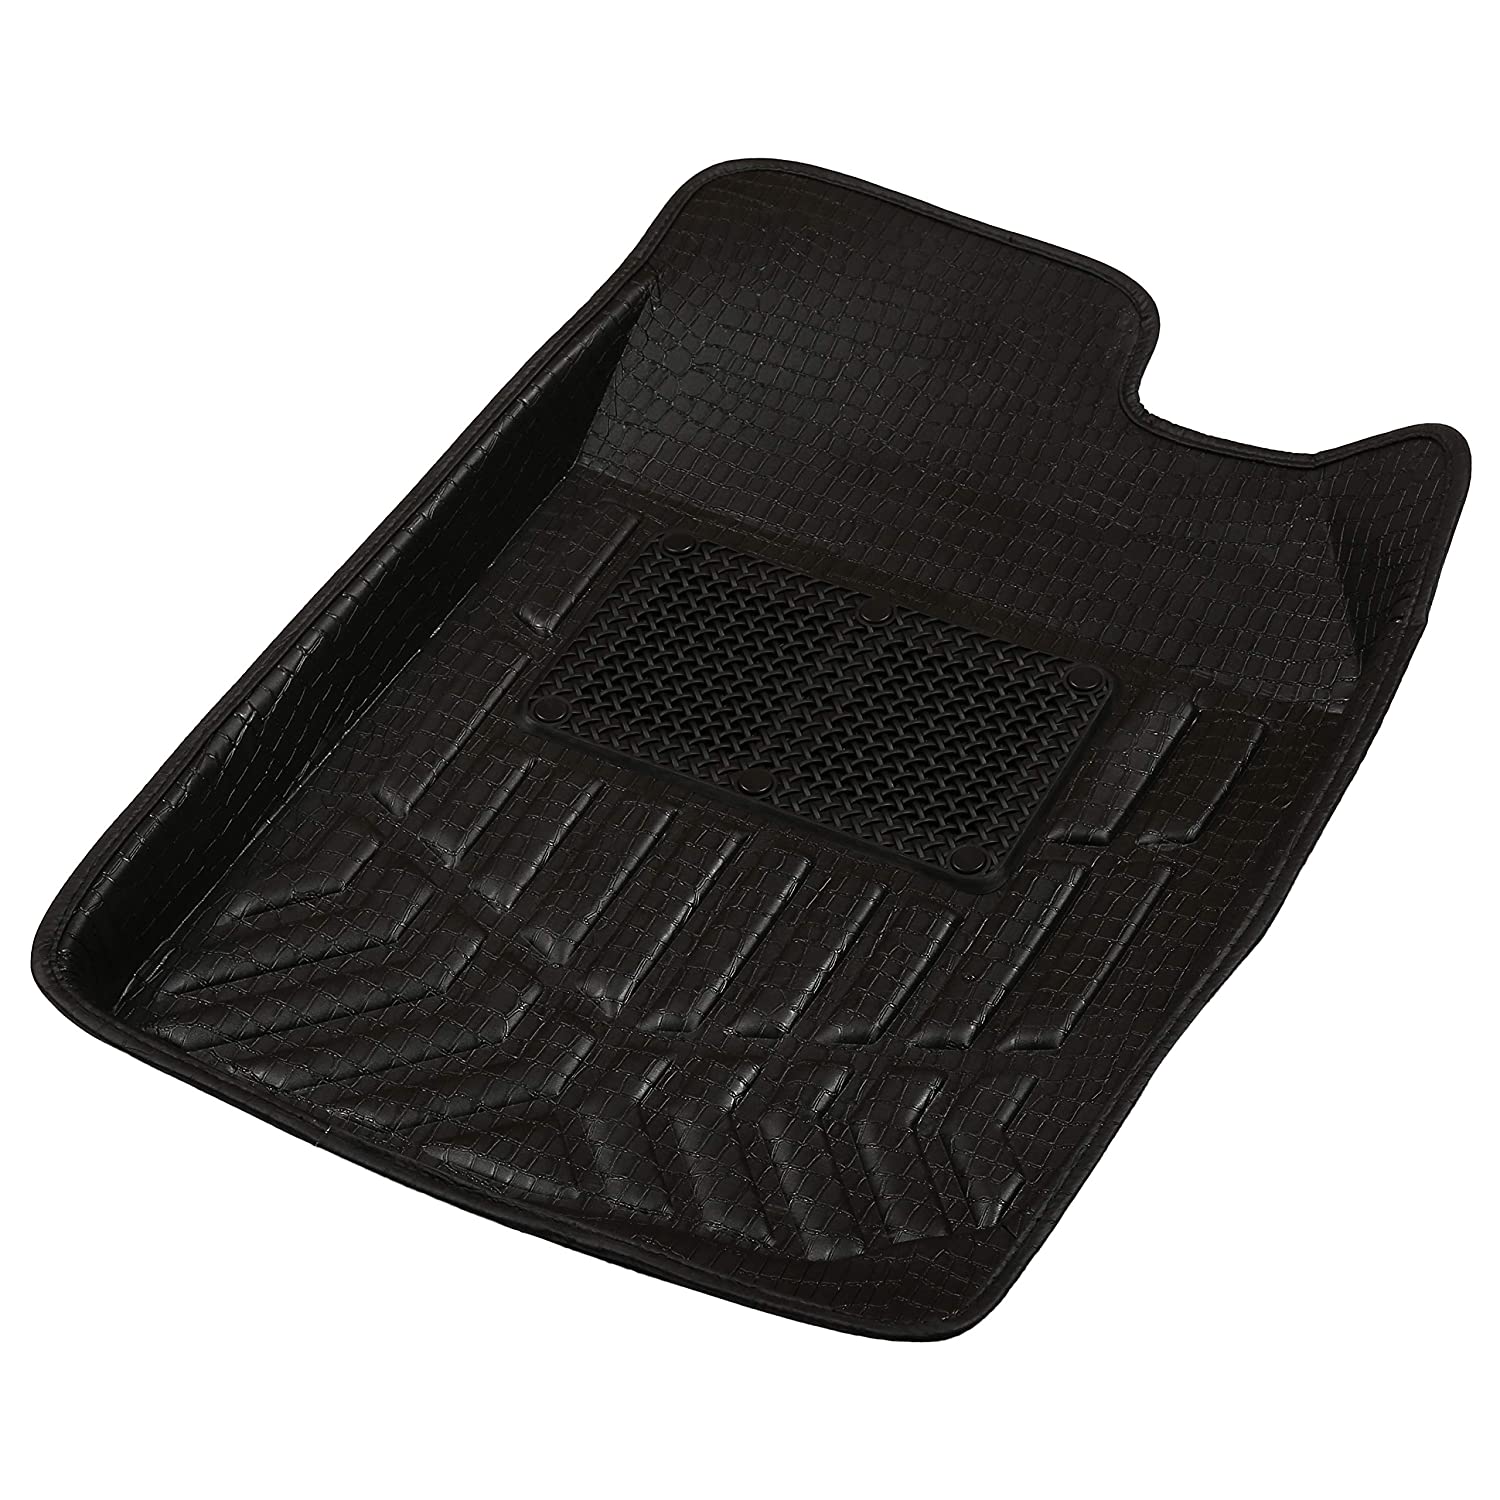 Drivn 3D Customised Car Floor Mat for Mahindra Bolero - Black (Set